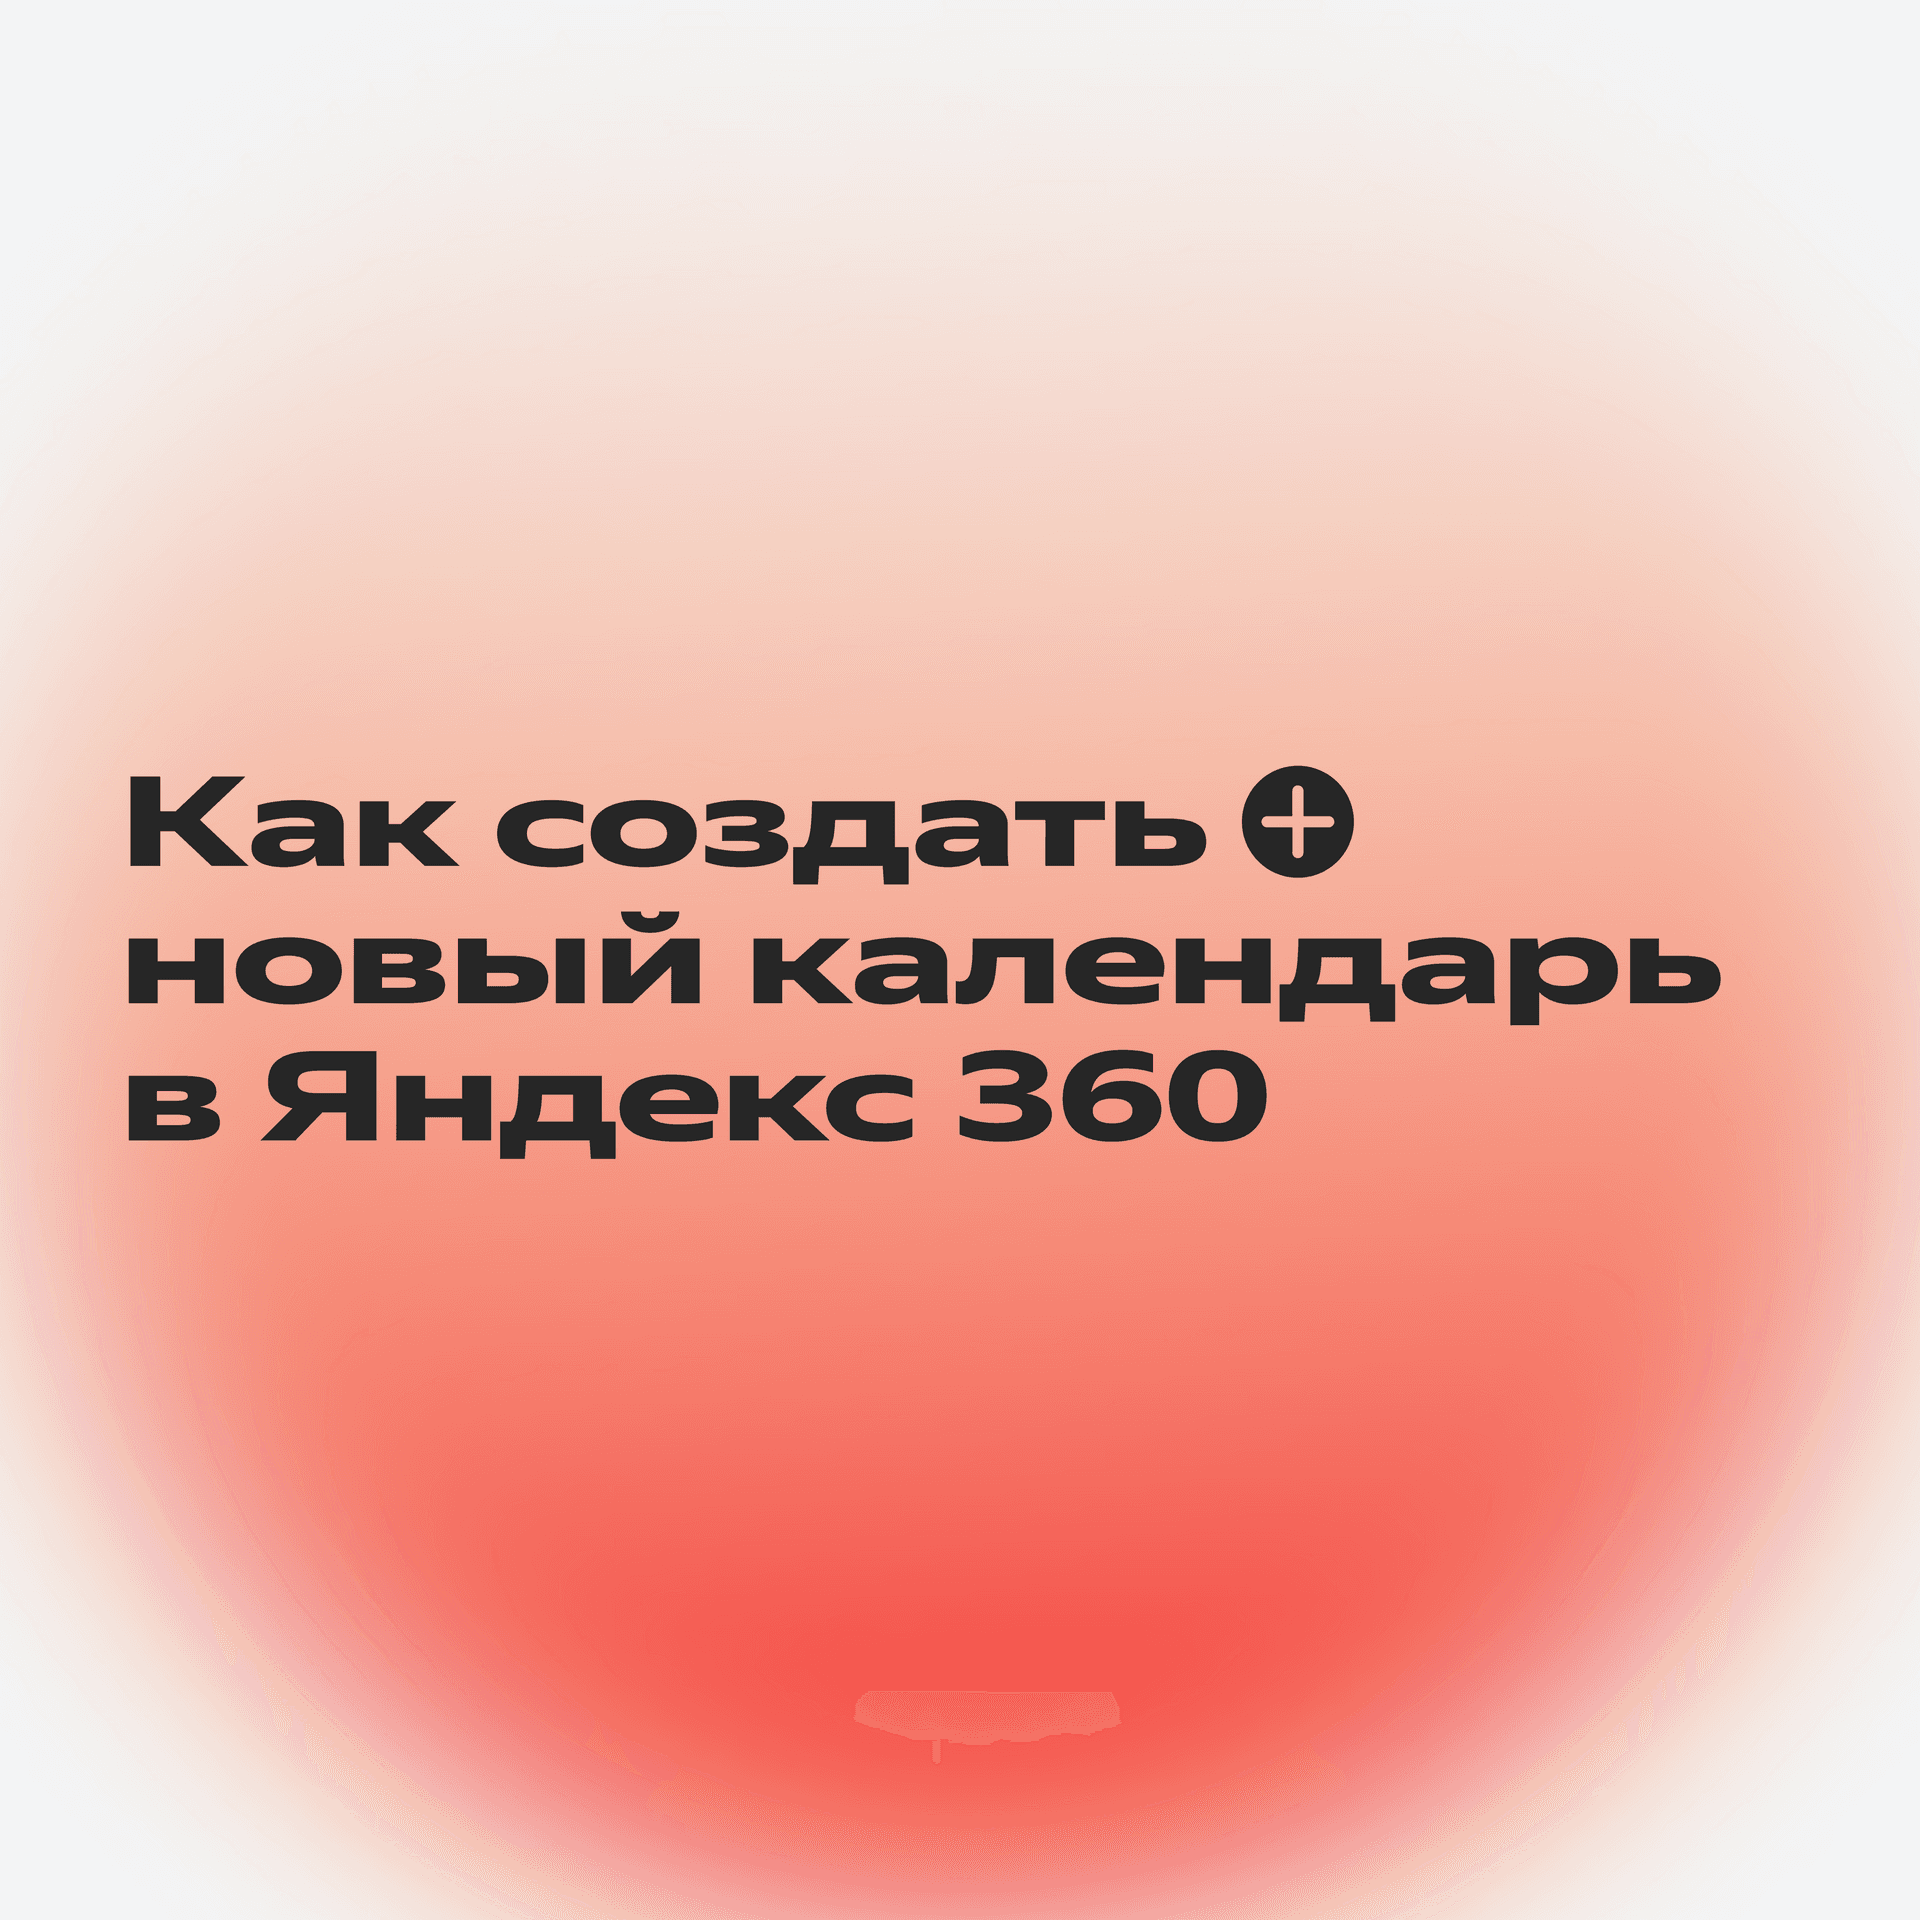 Яндекс 360 помогает в путешествиях_1-1